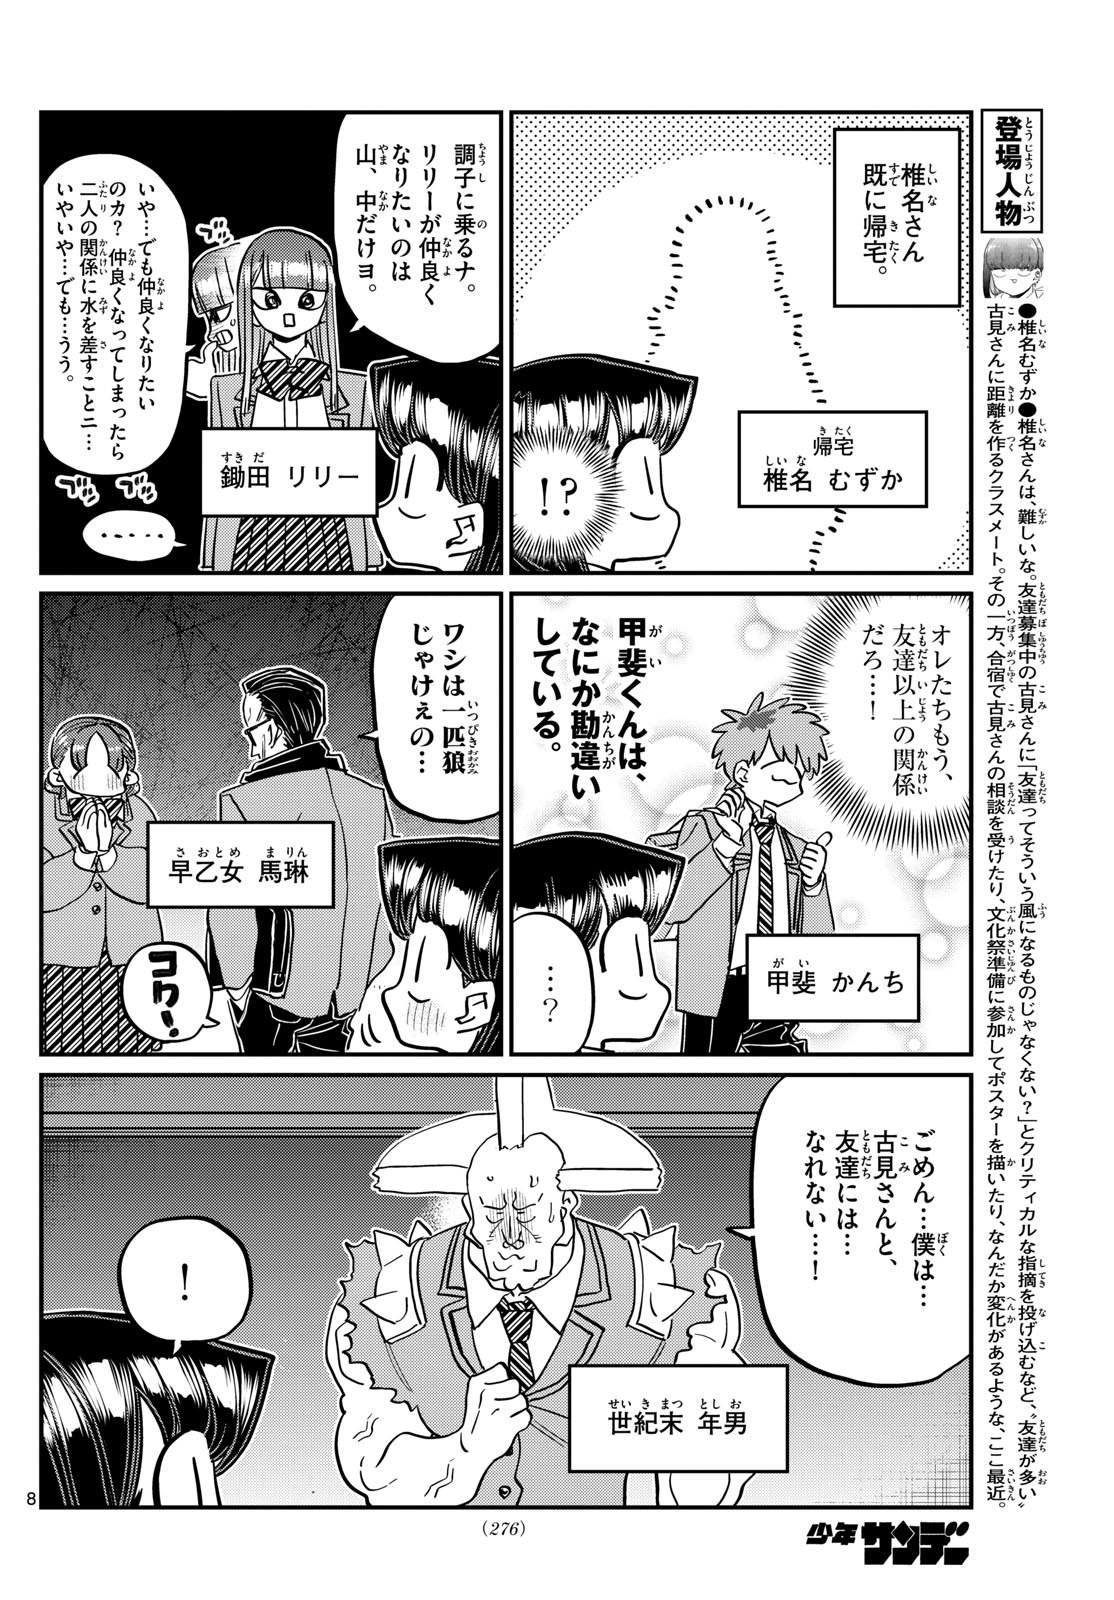 Komi-san wa Komyushou Desu - Chapter 458 - Page 8